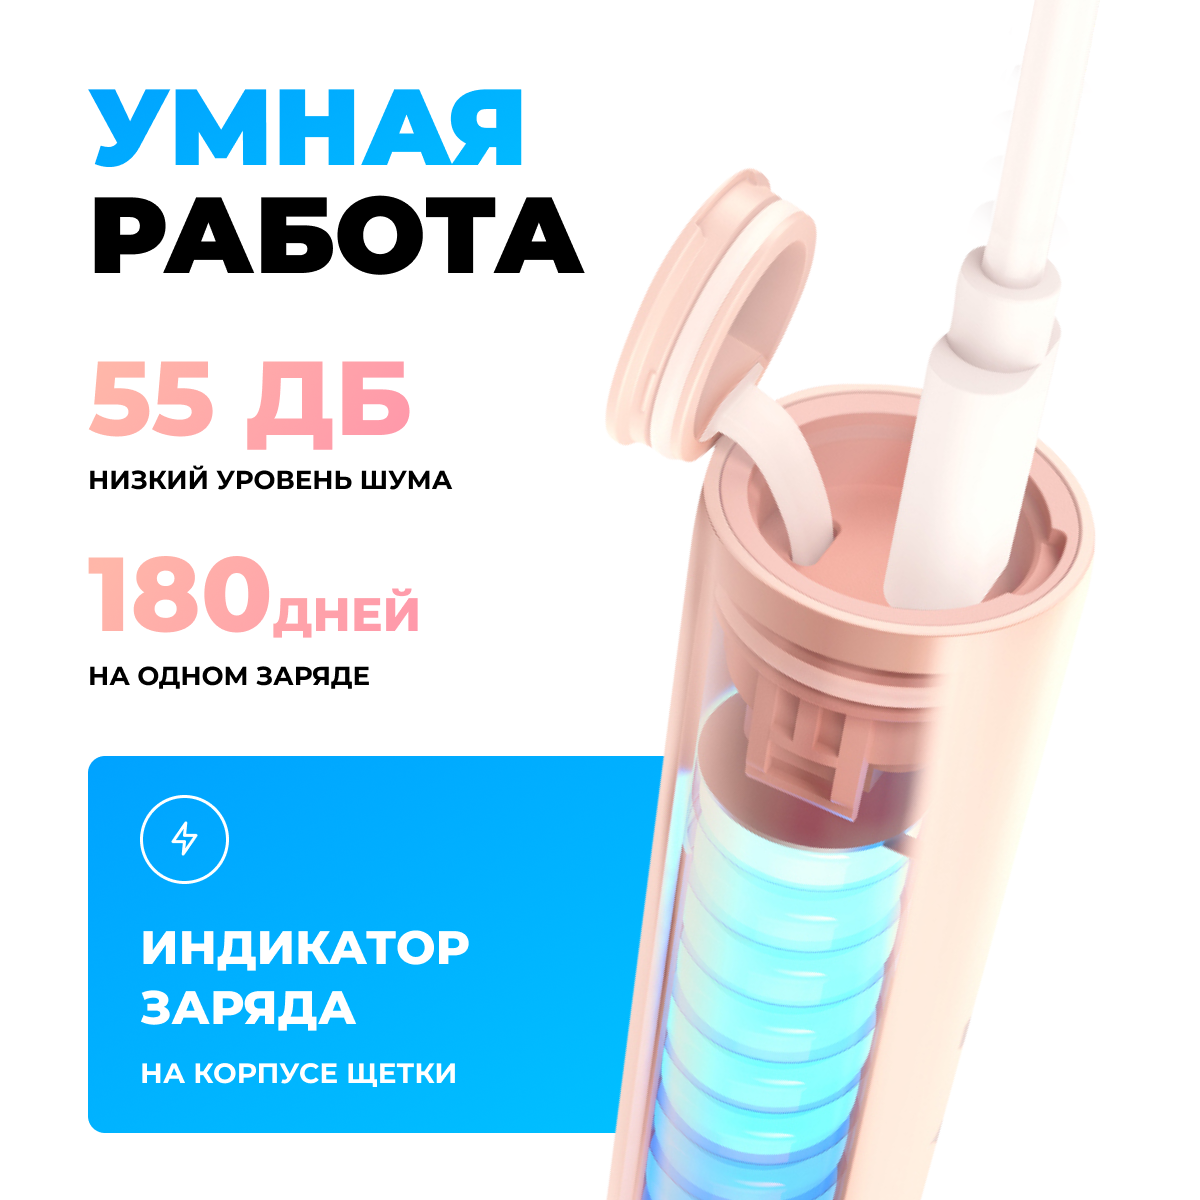 Электрическая зубная щётка Soocas D3 All-Care Sonic Electric Toothbrush Pink 2 насадки в комплекте глобальная версия розовая